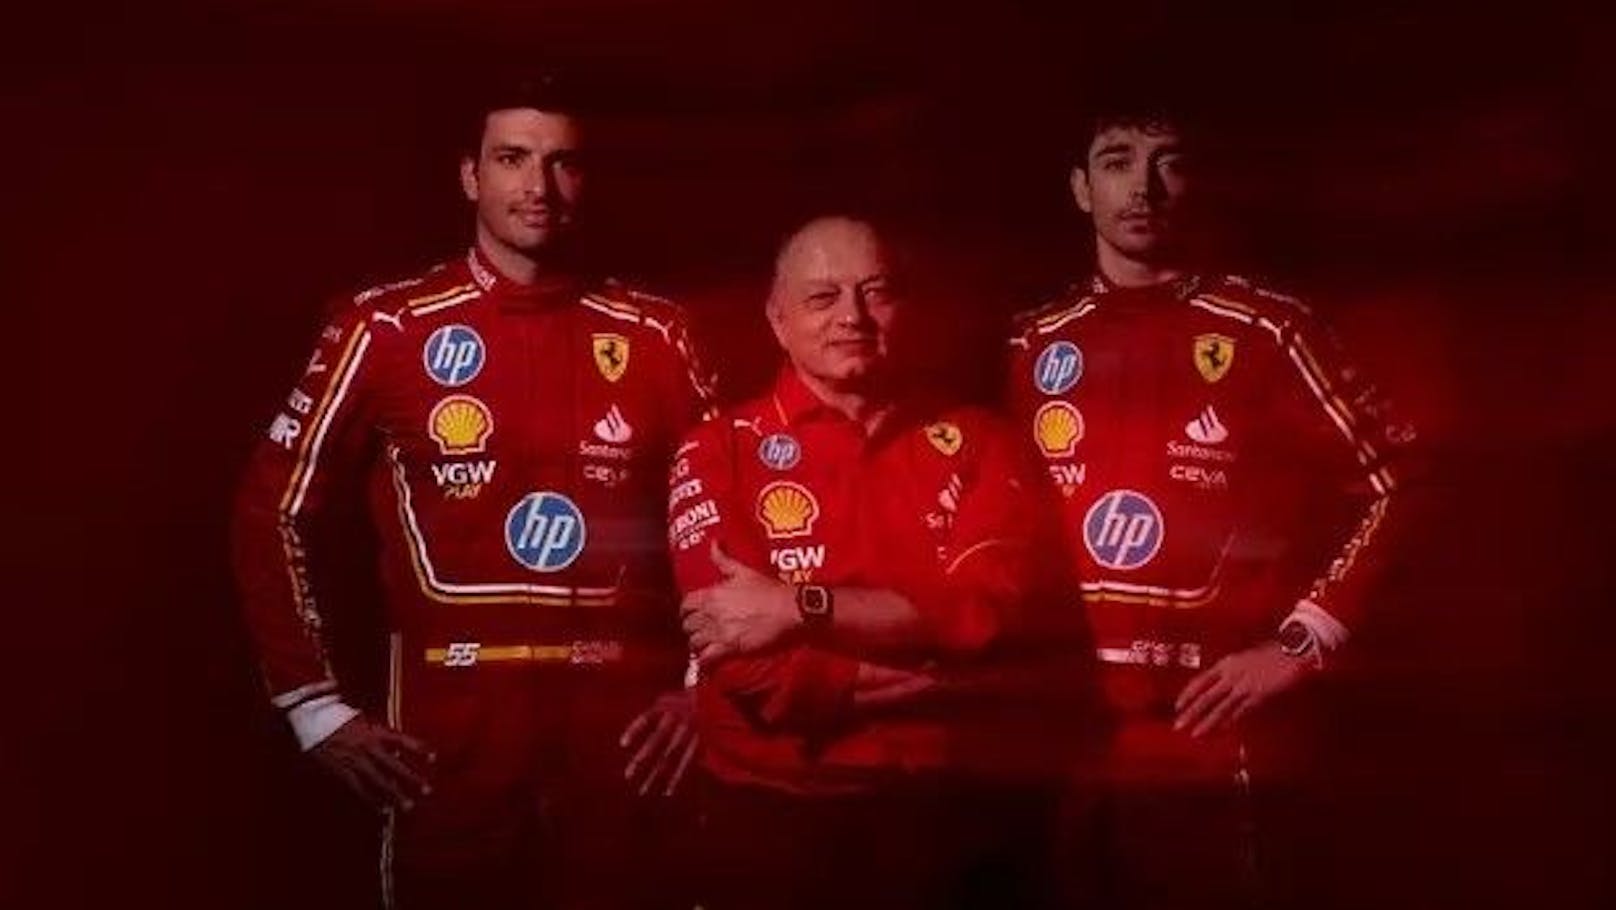 Die historische Titelpartnerschaft zwischen Ferrari und HP umfasst den neuen Teamnamen und die neue Markenidentität "Scuderia Ferrari HP" für das F1-Rennteam, das Scuderia Ferrari Esports-Team, die Ferrari Esports-Serie und das Scuderia Ferrari-Auto, das in der F1 Academy-Serie antritt. 